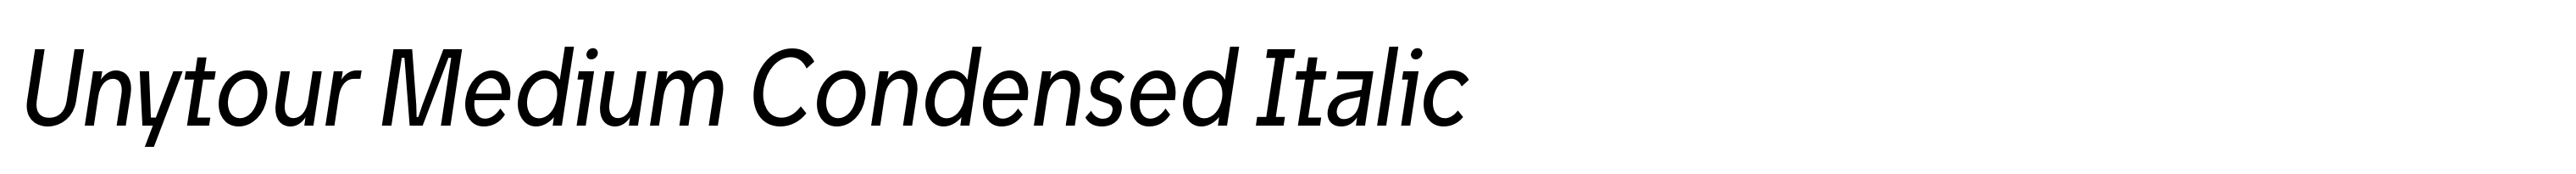 Unytour Medium Condensed Italic